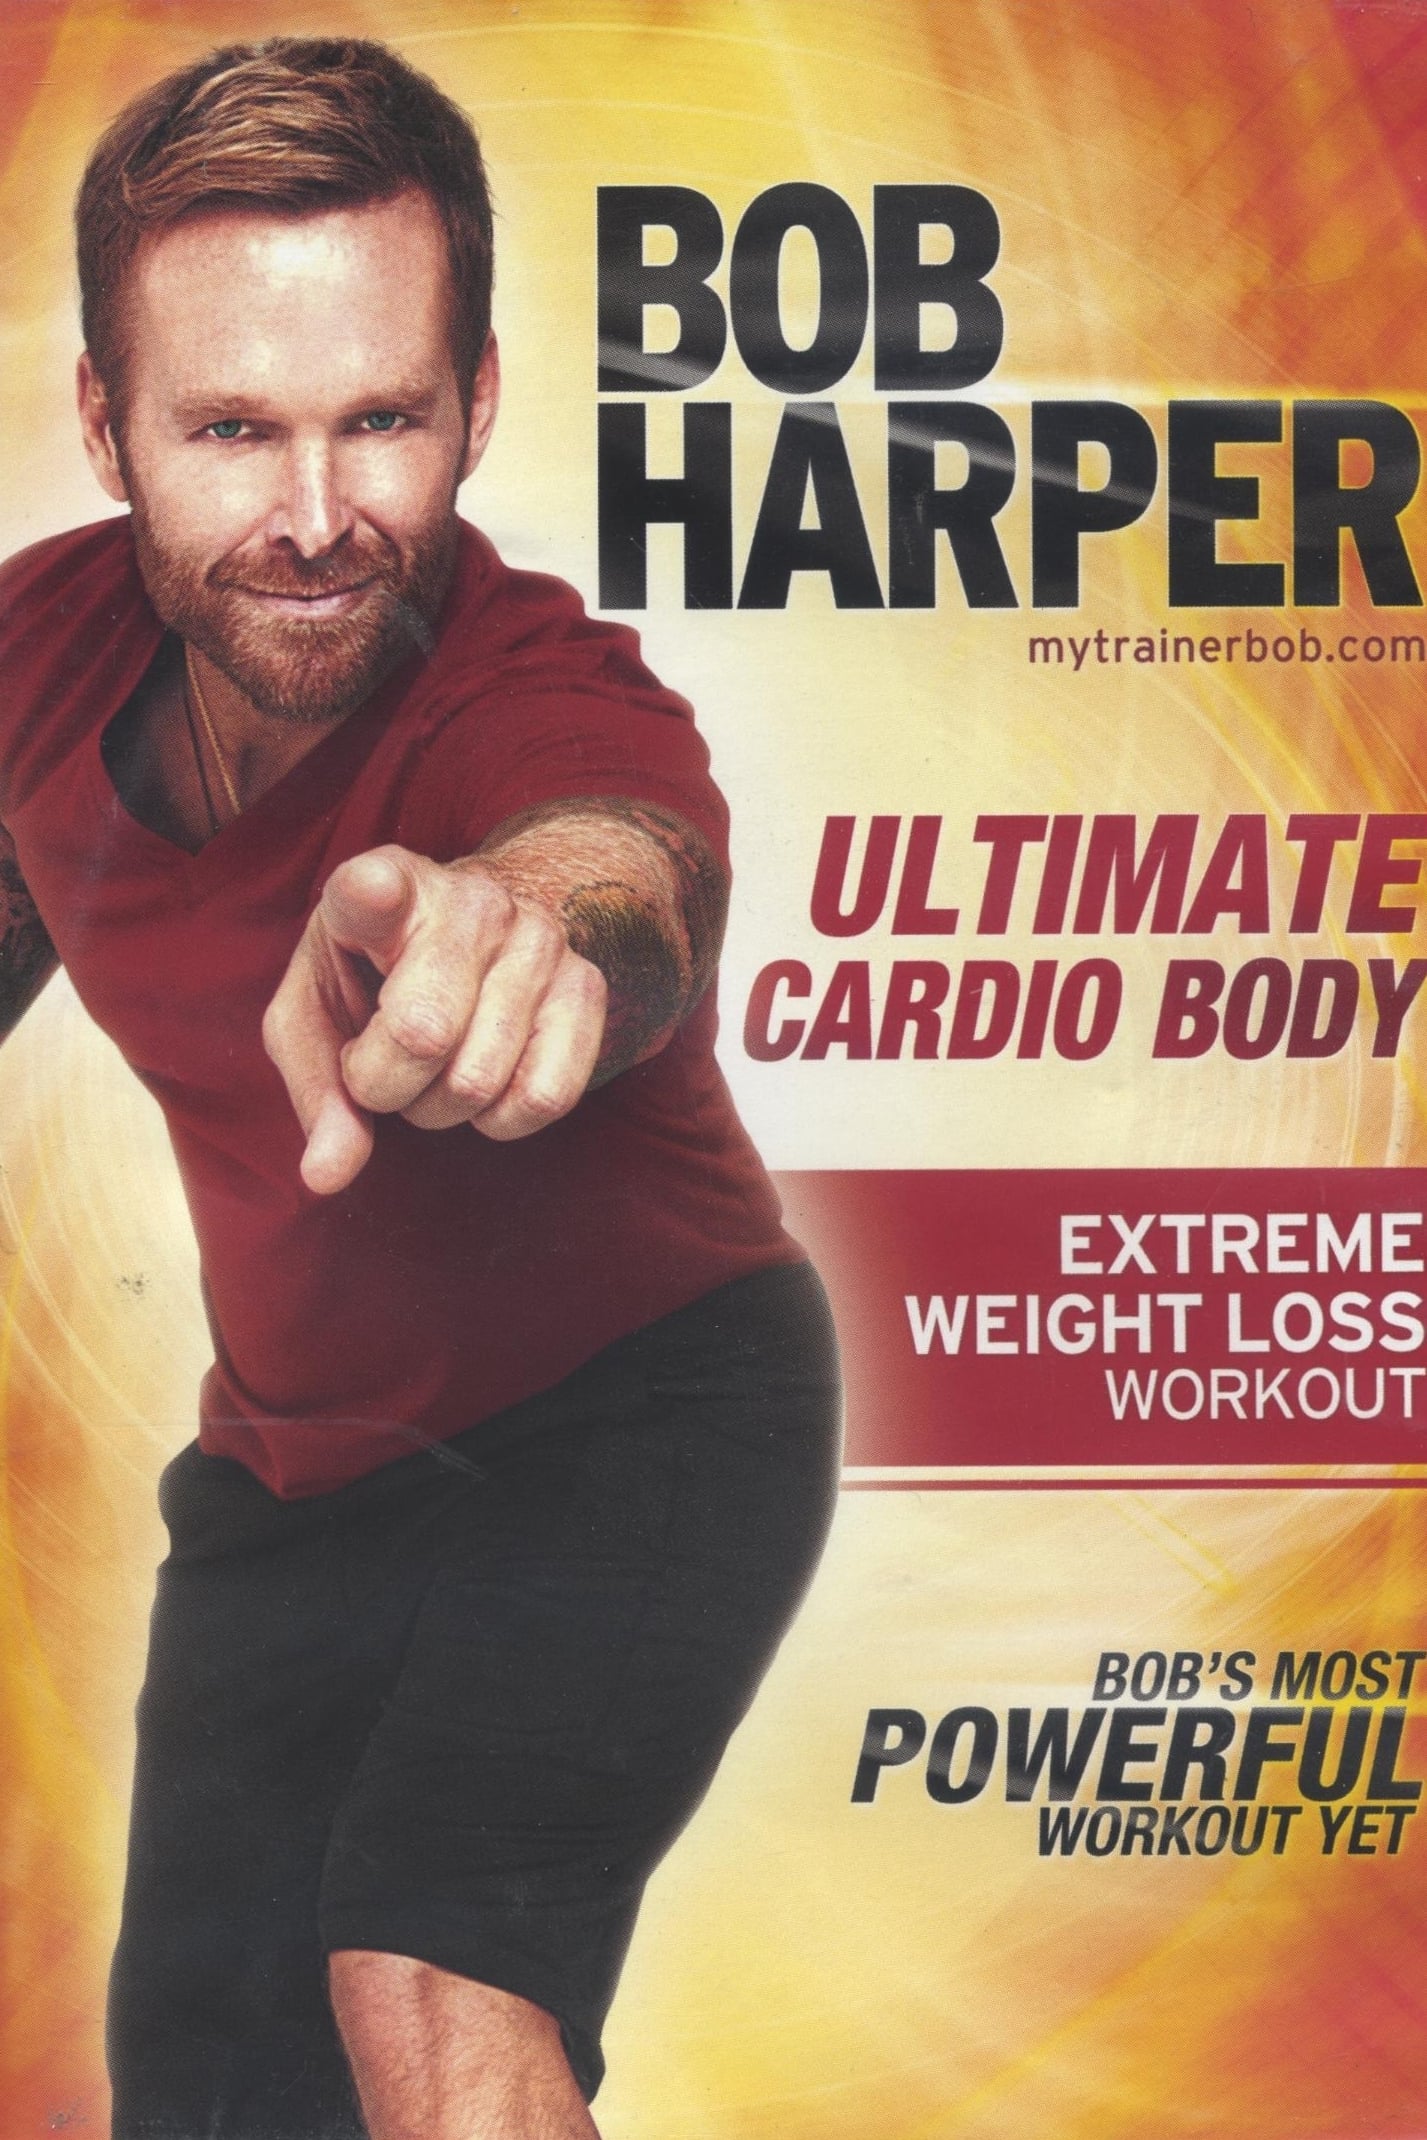 Bob Harper: Ultimate Cardio Body - 2 10-minute Glute Challenge